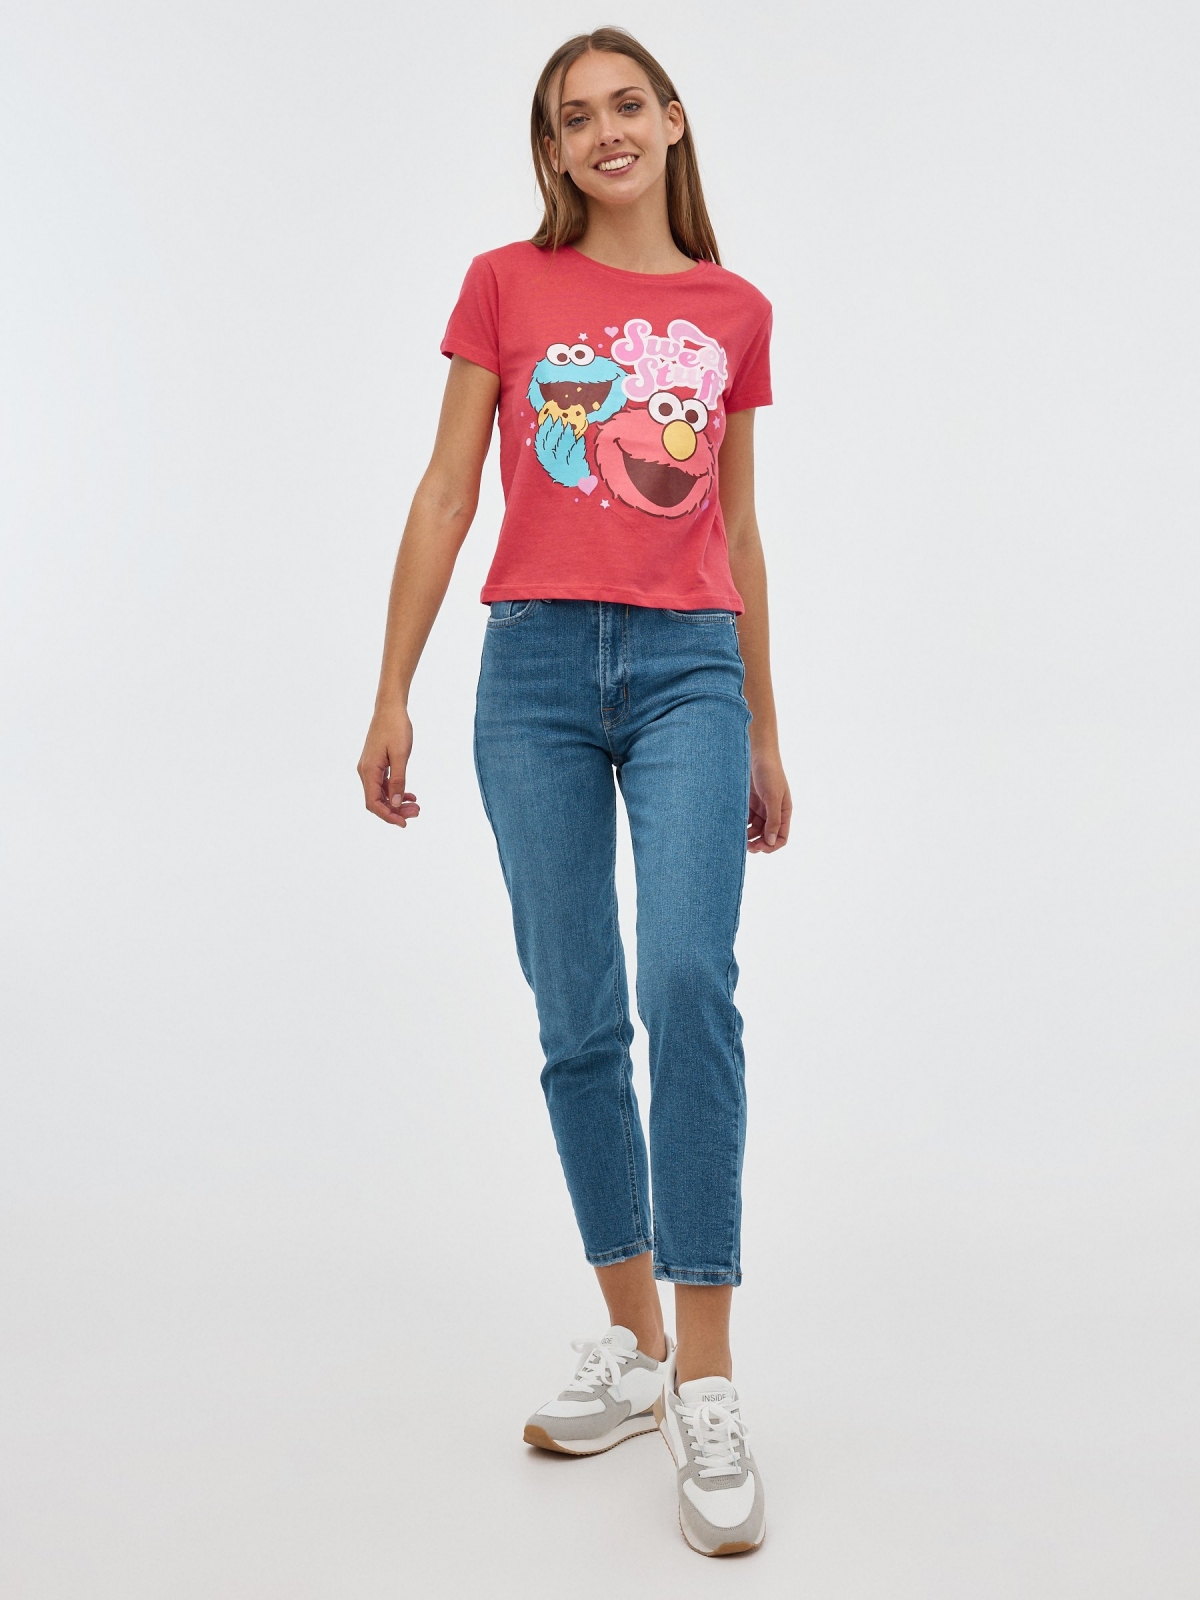 T-shirt Elmo e Coco vermelho vista geral frontal